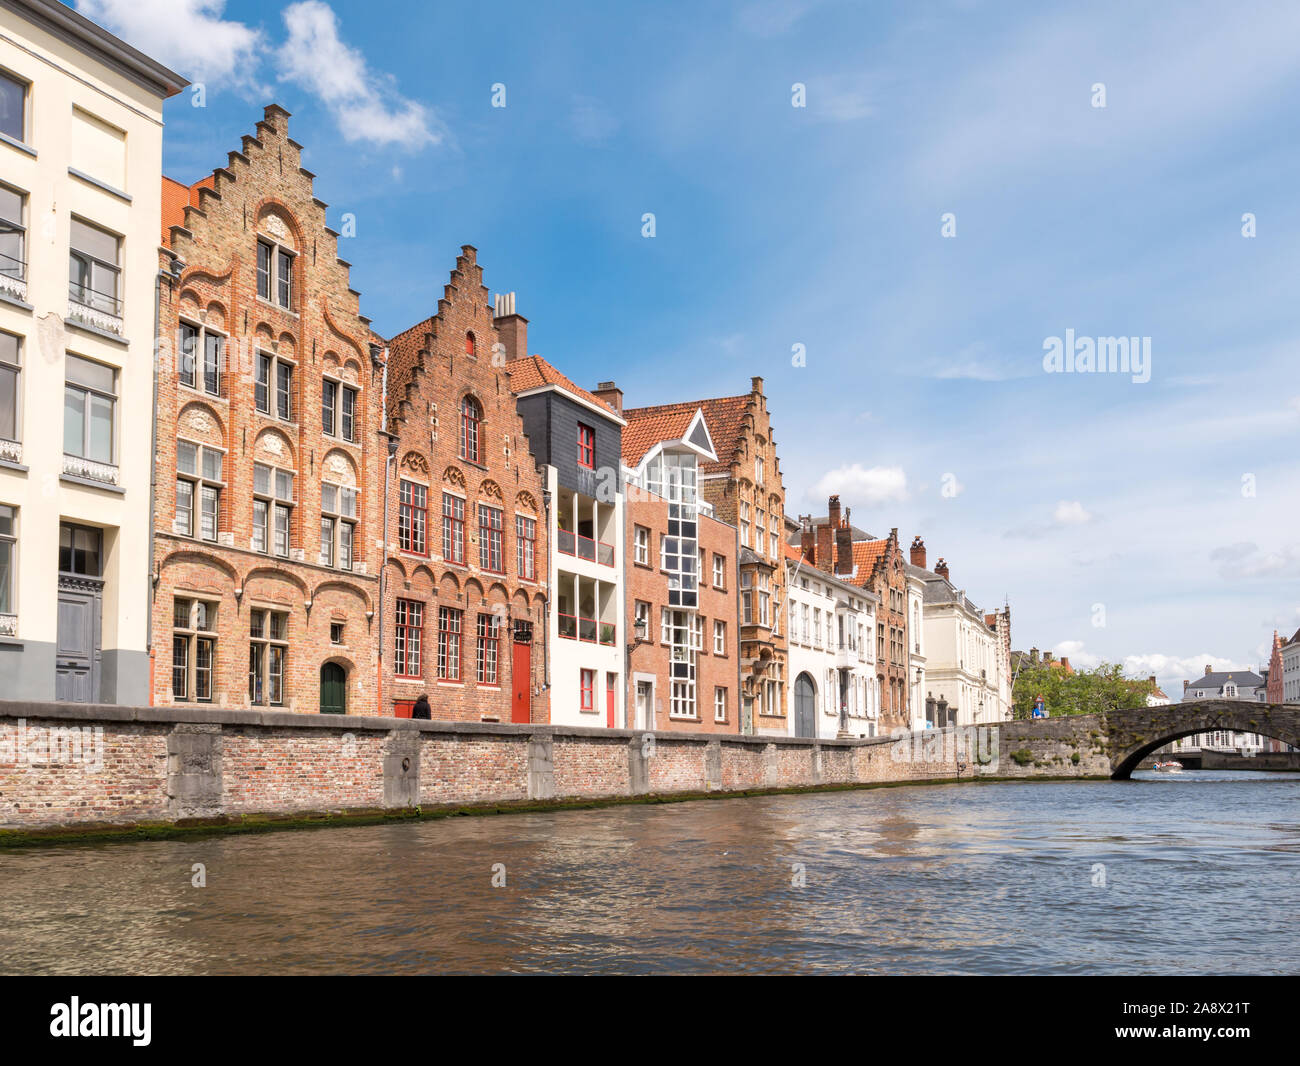 Façades de maisons anciennes et modernes sur canal Spiegelrei dans la vieille ville de Bruges, Flandre occidentale, Belgique Banque D'Images